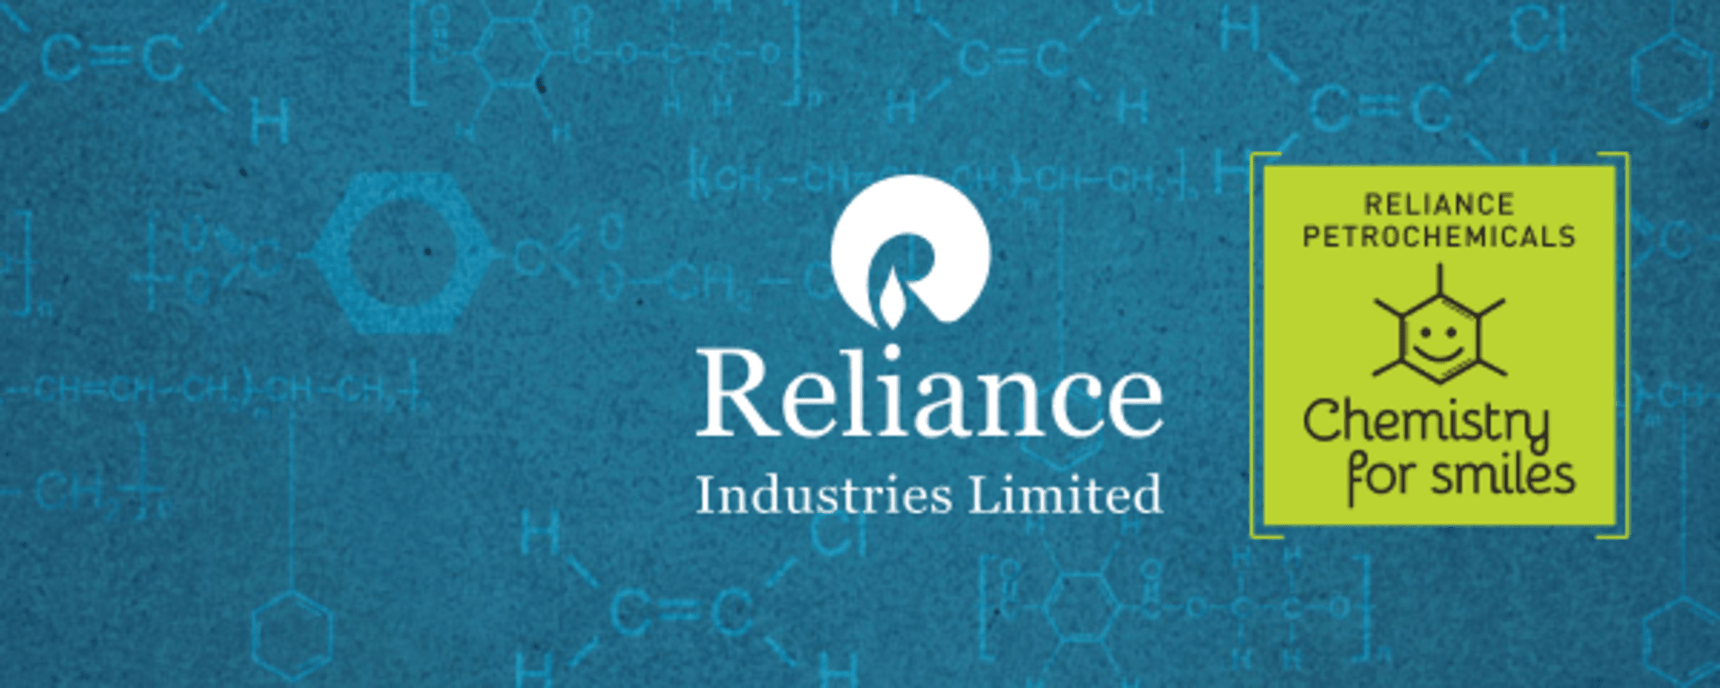 Reliance Industries Ltd. banner